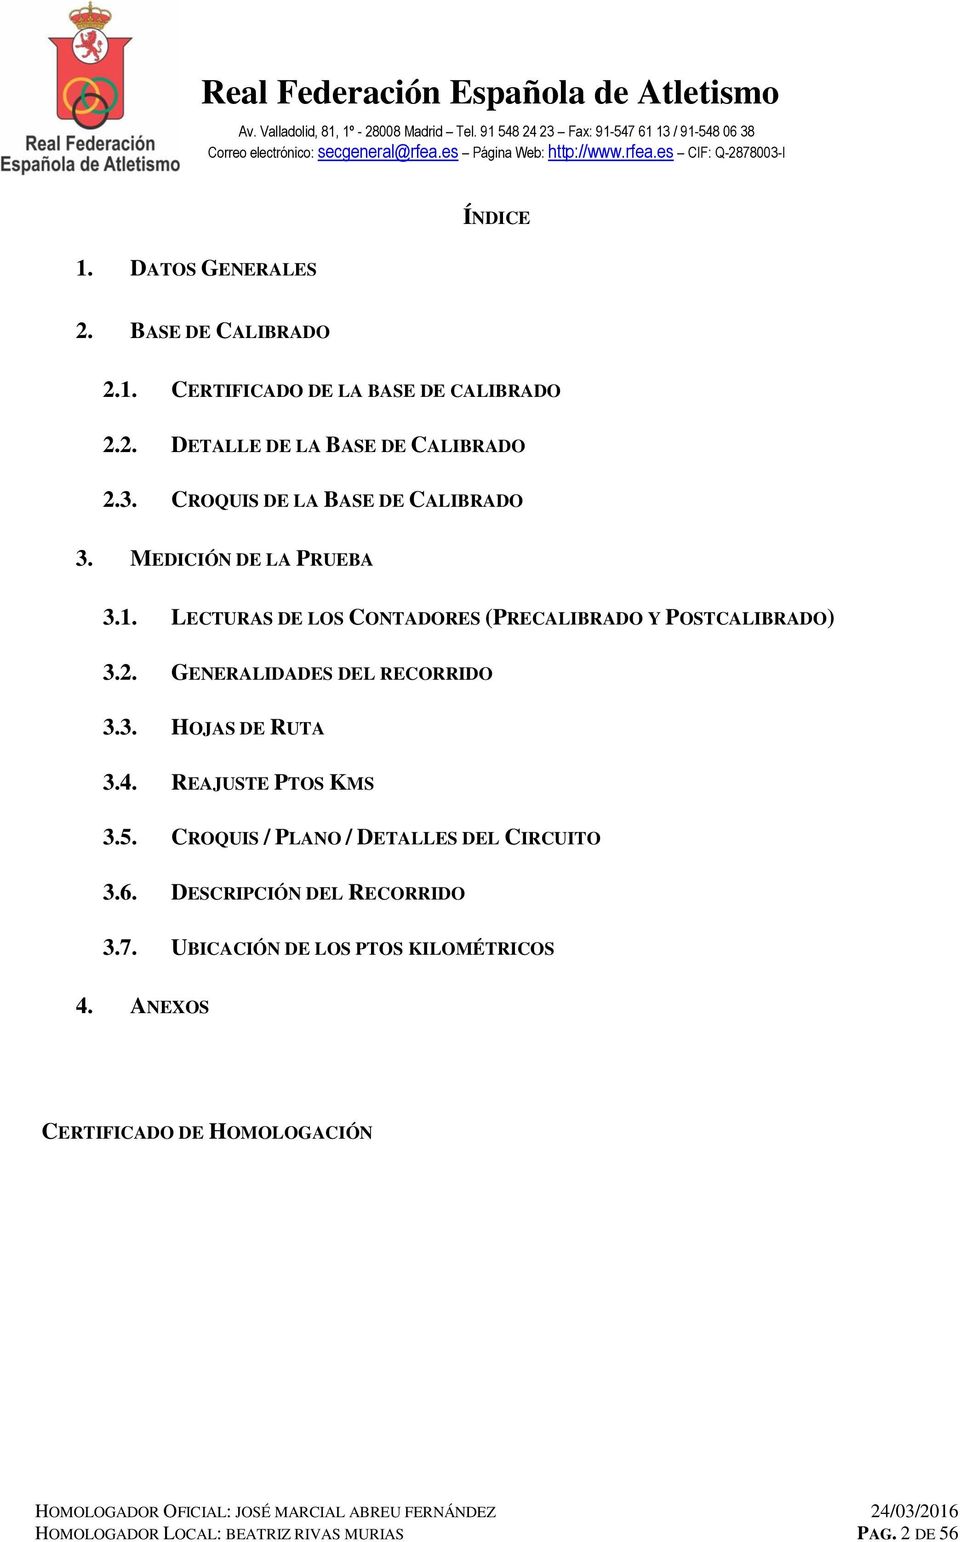 GENERALIDADES DEL RECORRIDO 3.3. HOJAS DE RUTA 3.4. REAJUSTE PTOS KMS 3.5. CROQUIS / PLANO / DETALLES DEL CIRCUITO 3.6.